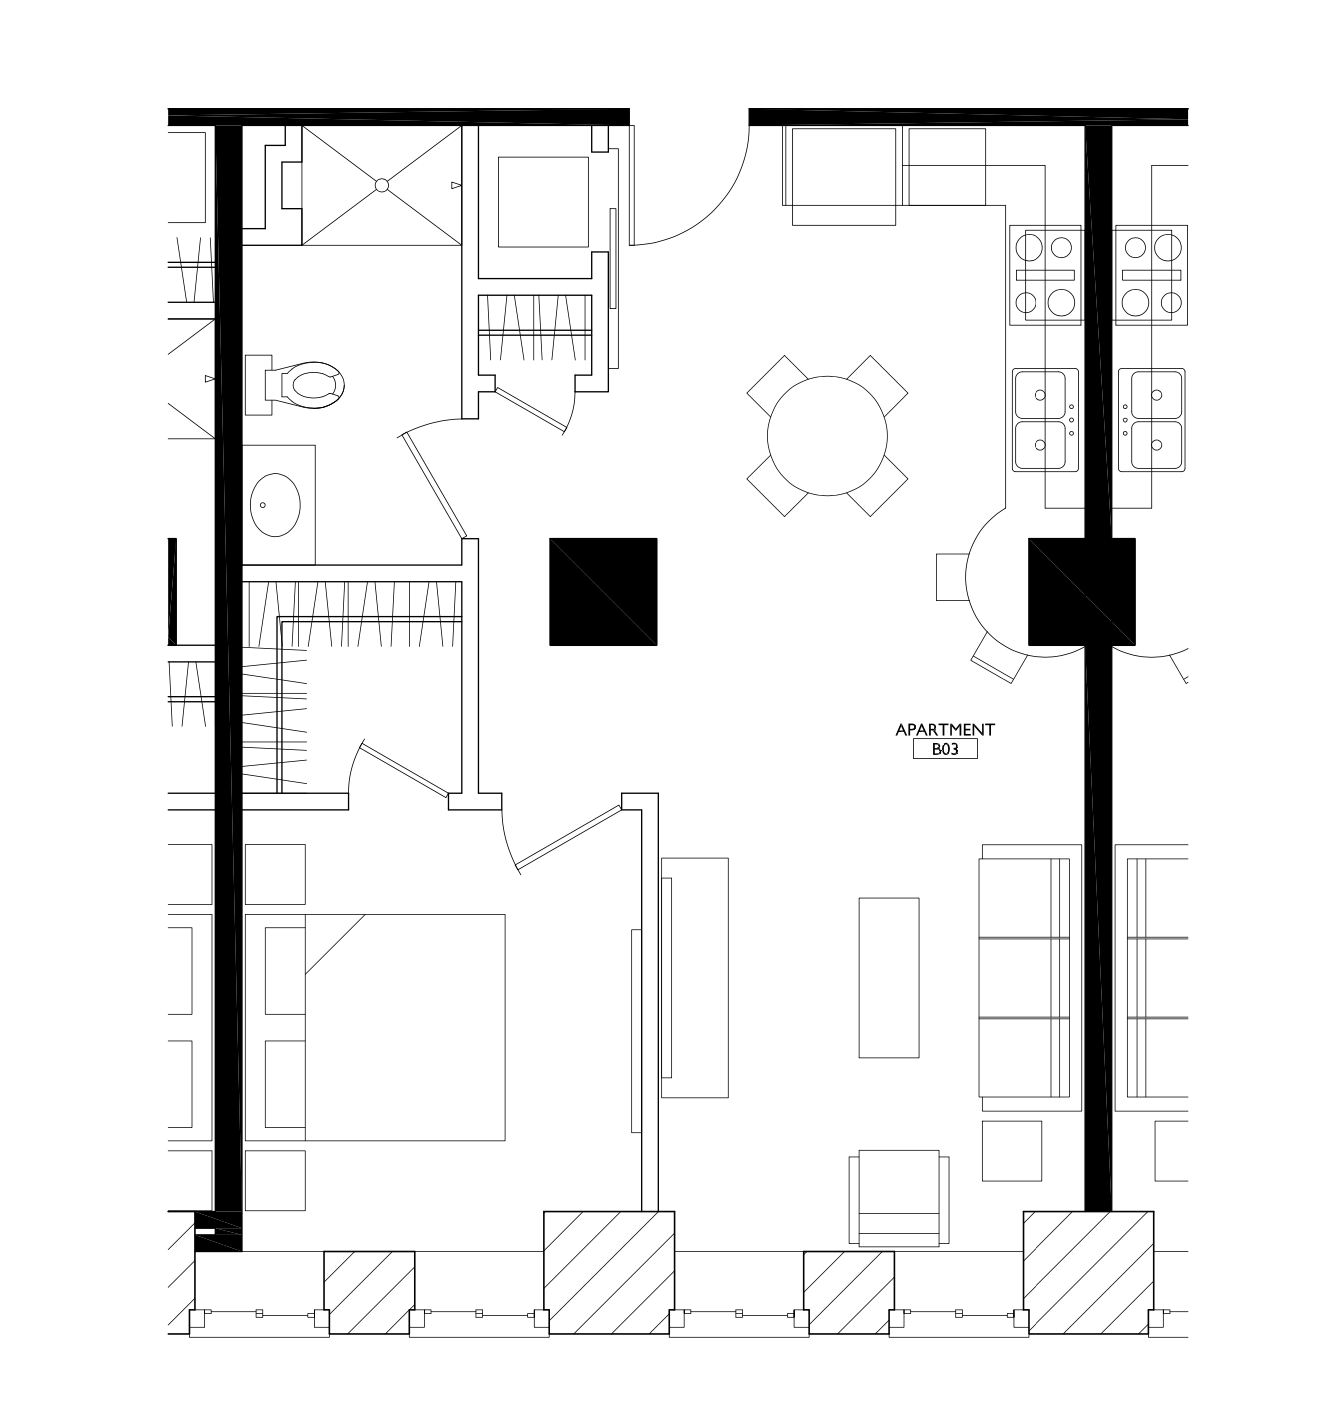 OGGI Lofts - Floorplan - 1 Bedroom